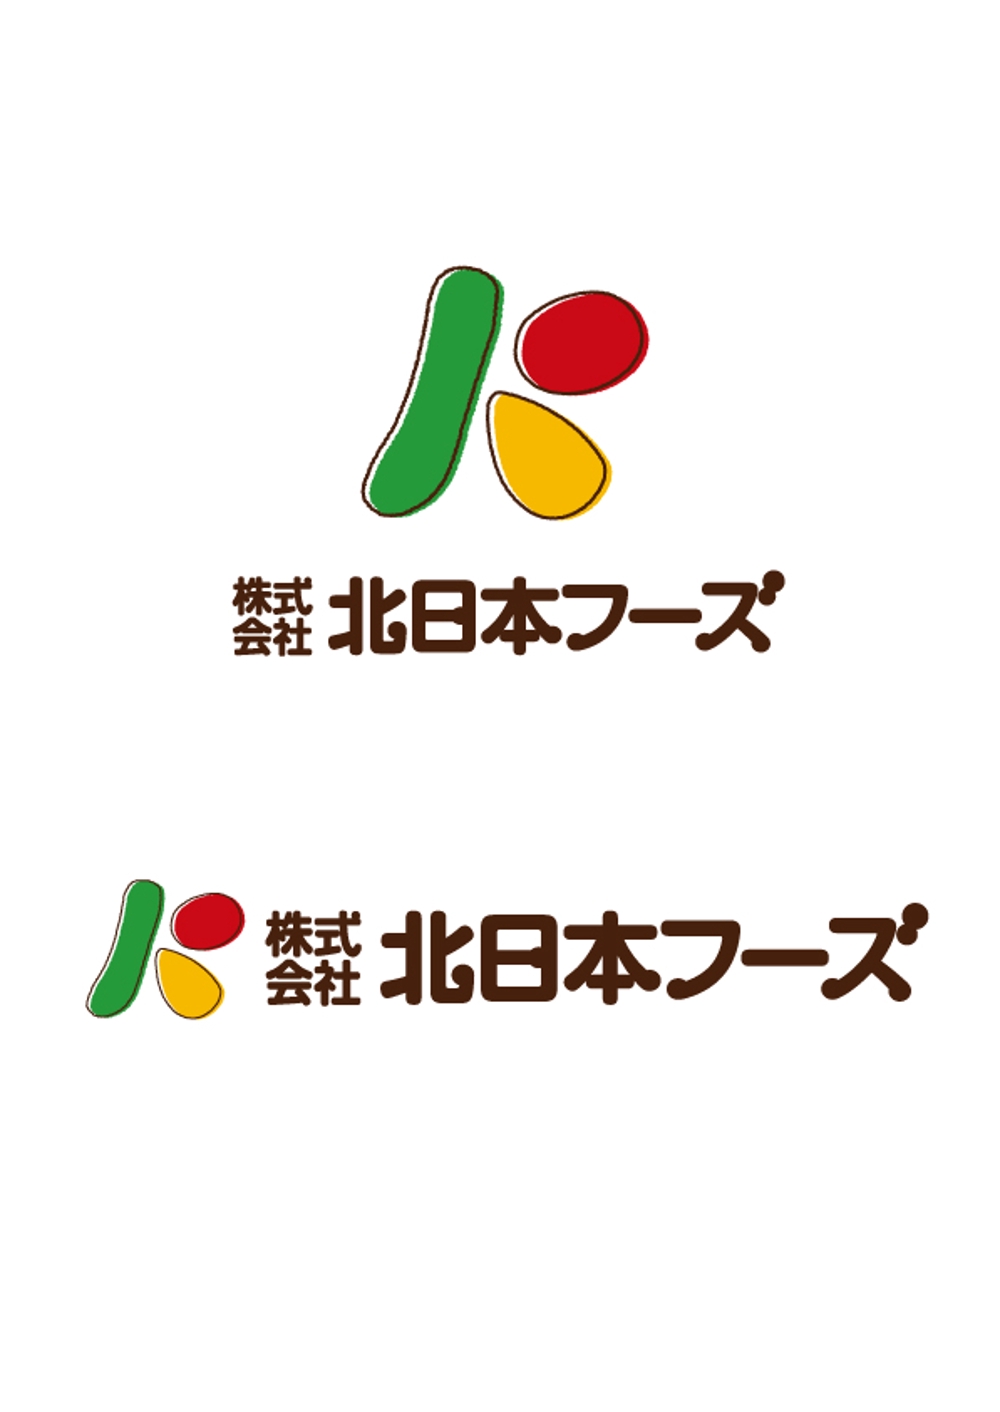 食品会社のロゴ作成